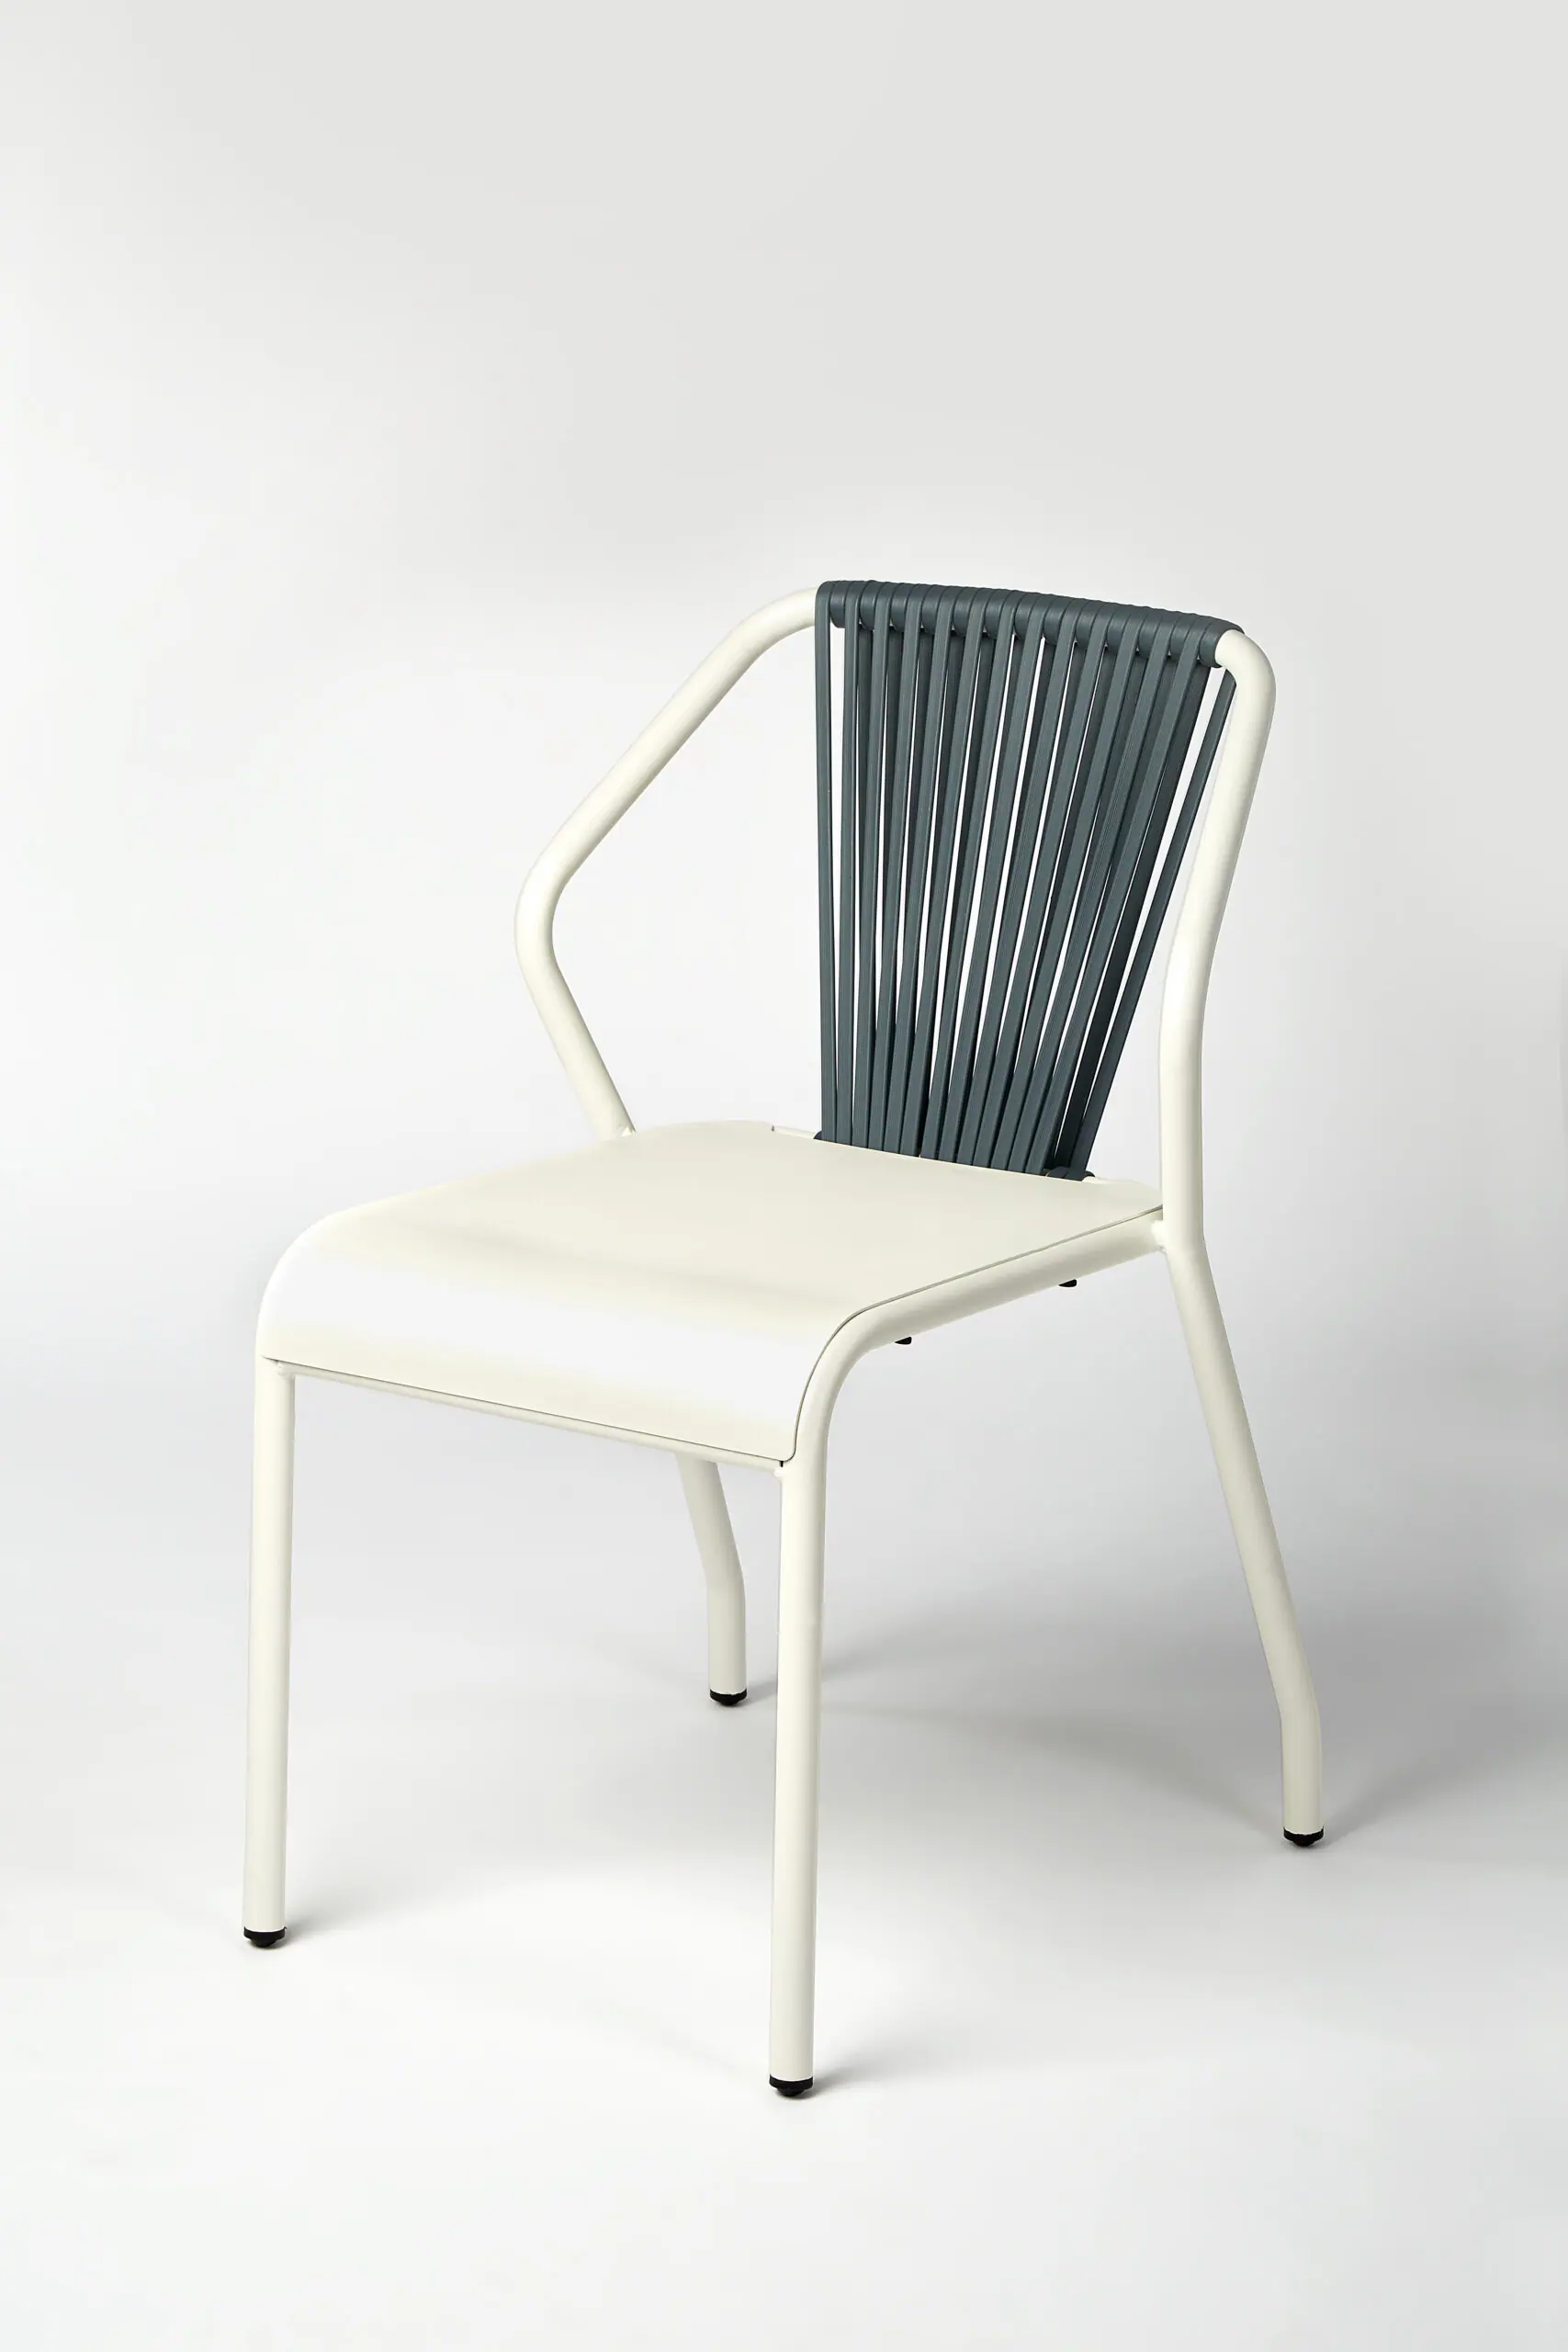 69298-69214-duna-lounge-chair